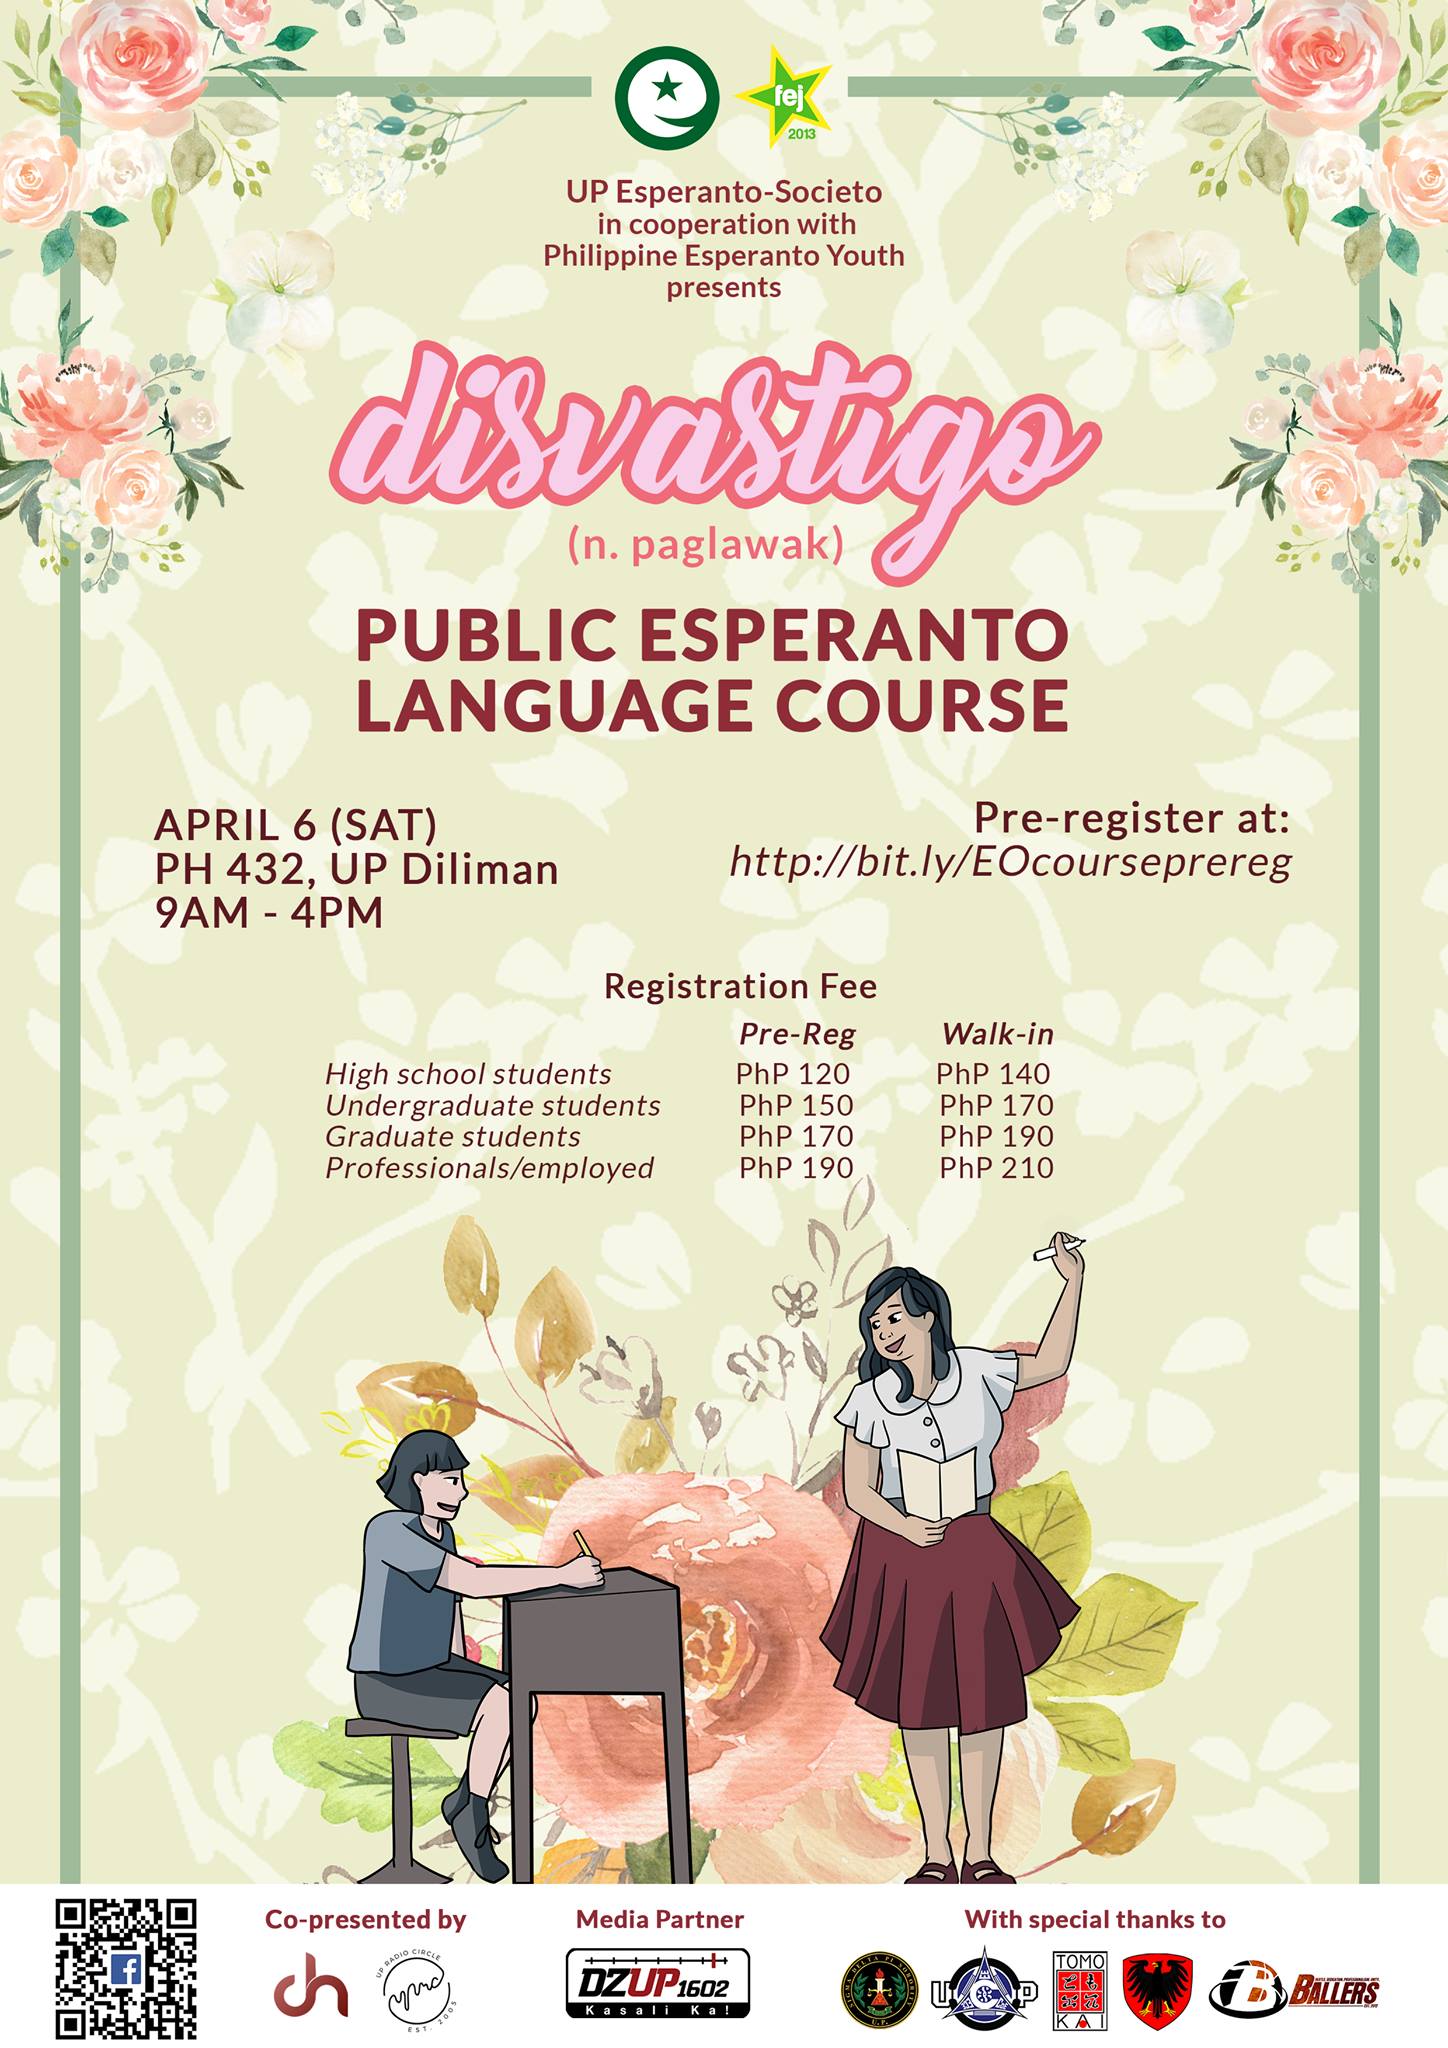 Disvastigo: Public Esperanto Language Course